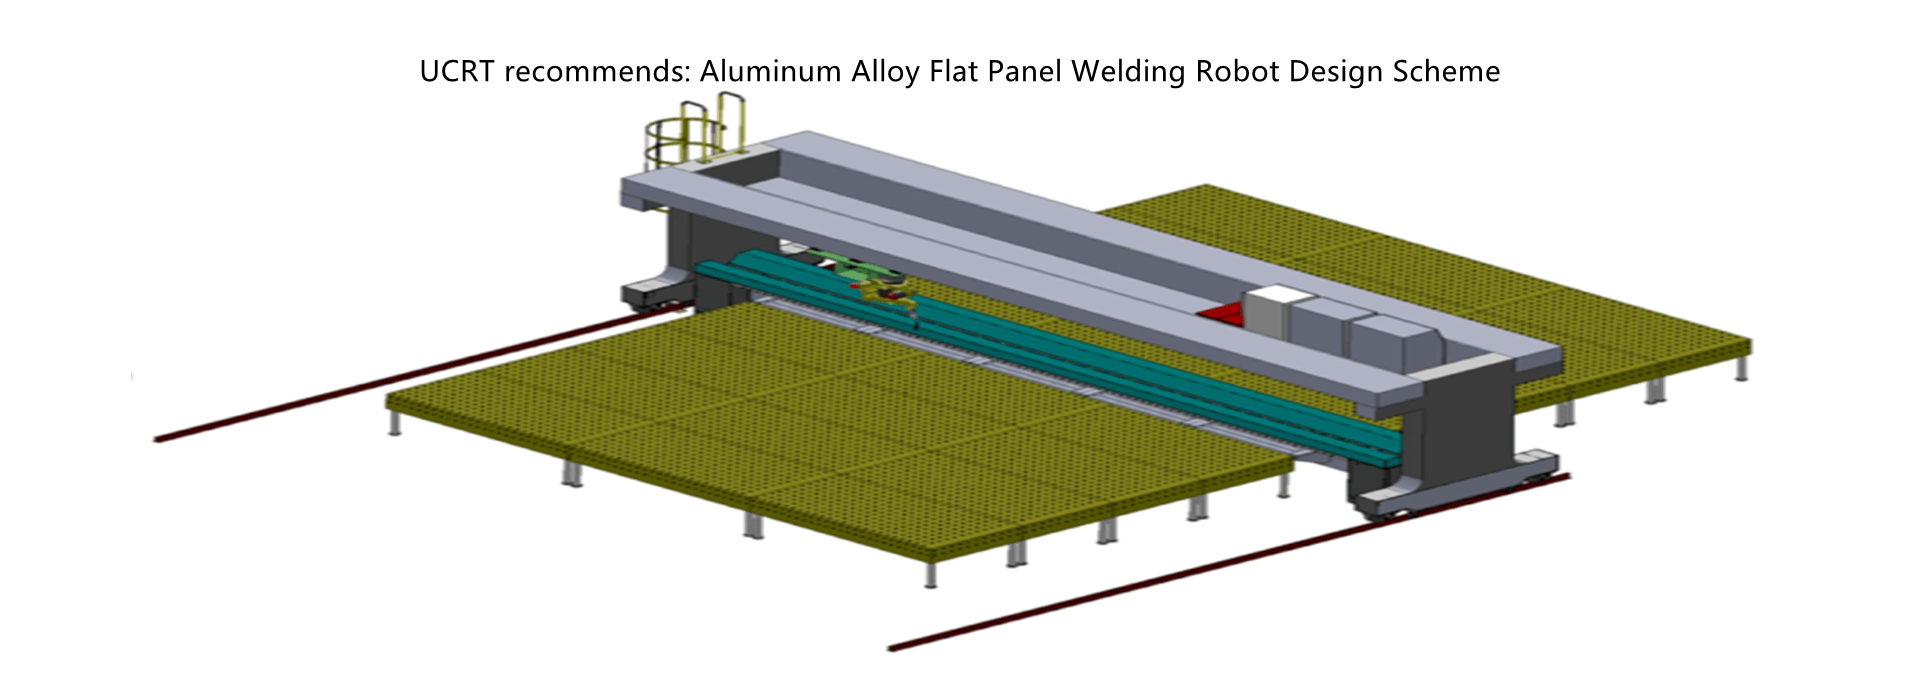 Aluminum Alloy Flat Panel Welding Robot Design Scheme